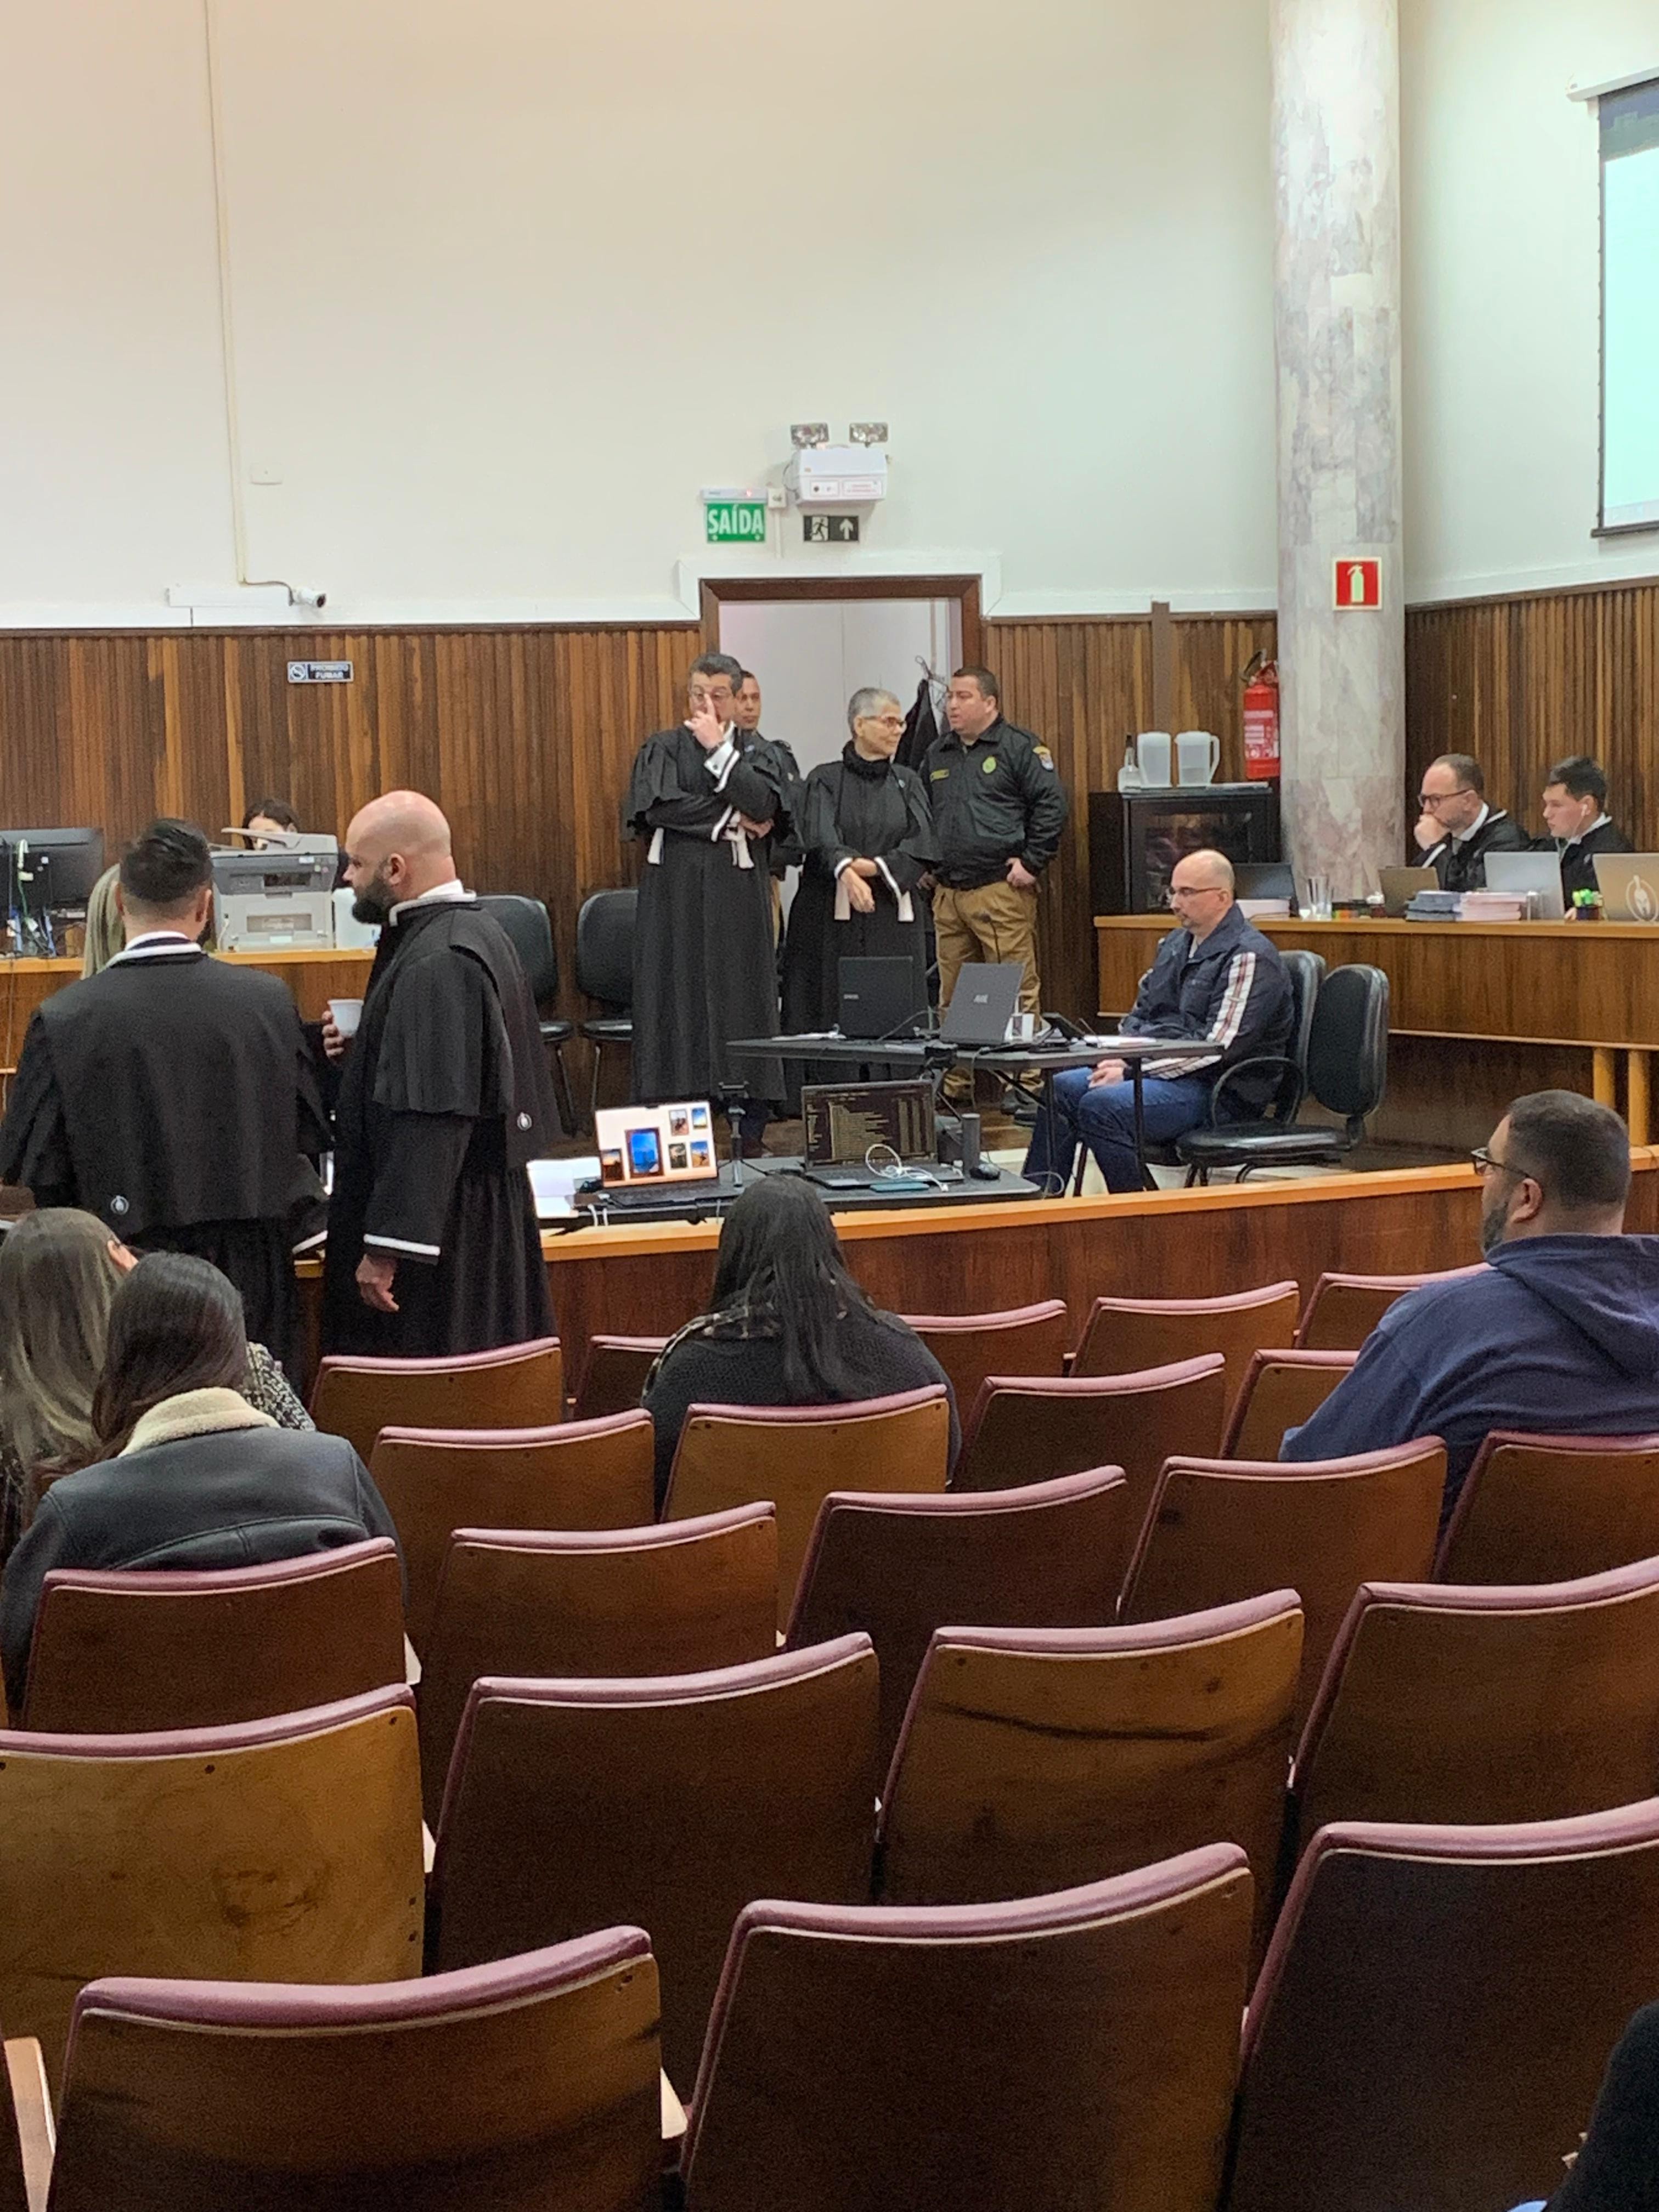 Começa o júri popular de delegado acusado de matar esposa e enteada em Curitiba; relembre o crime